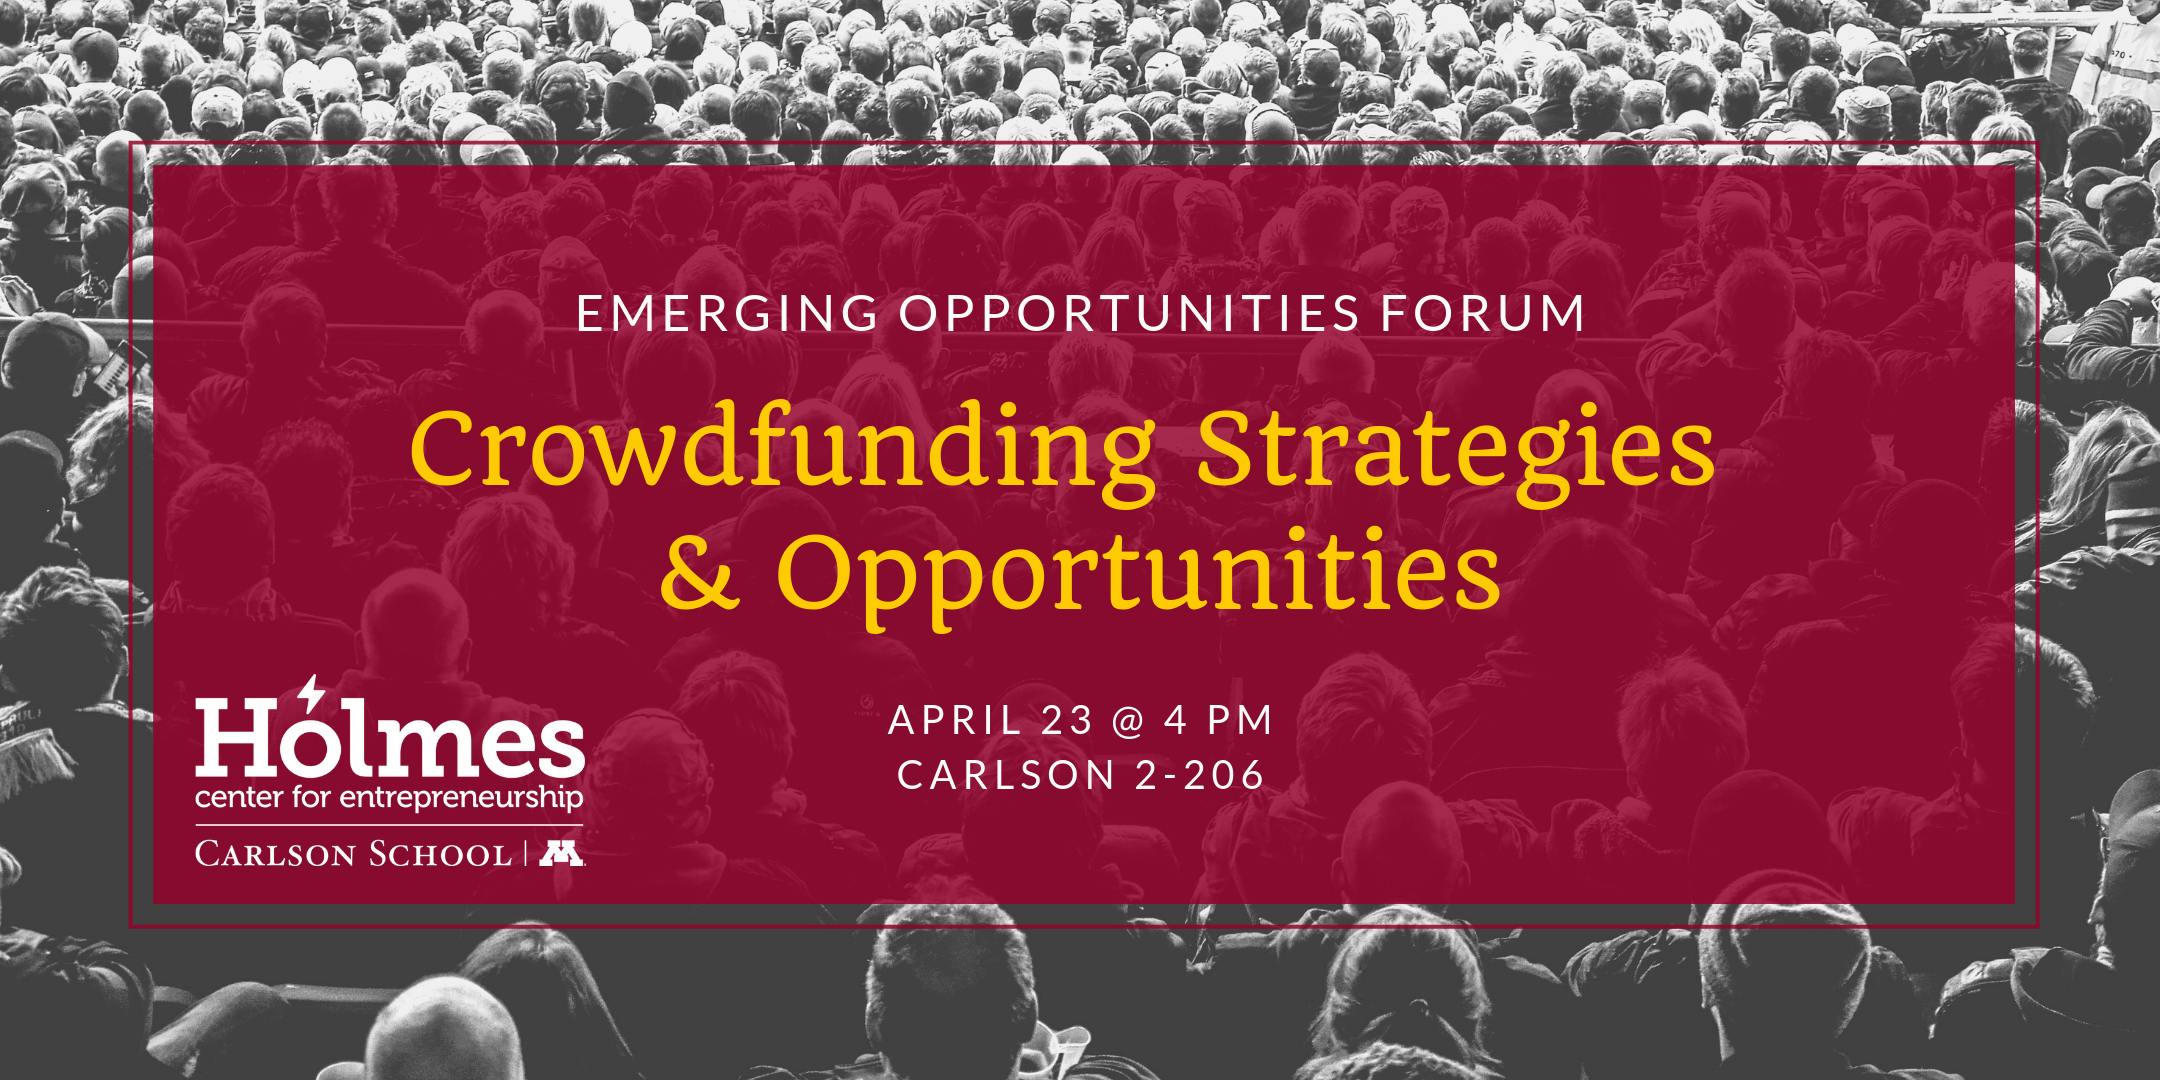 Emerging Opportunities Forum: Crowdfunding Strategies & Opportunities